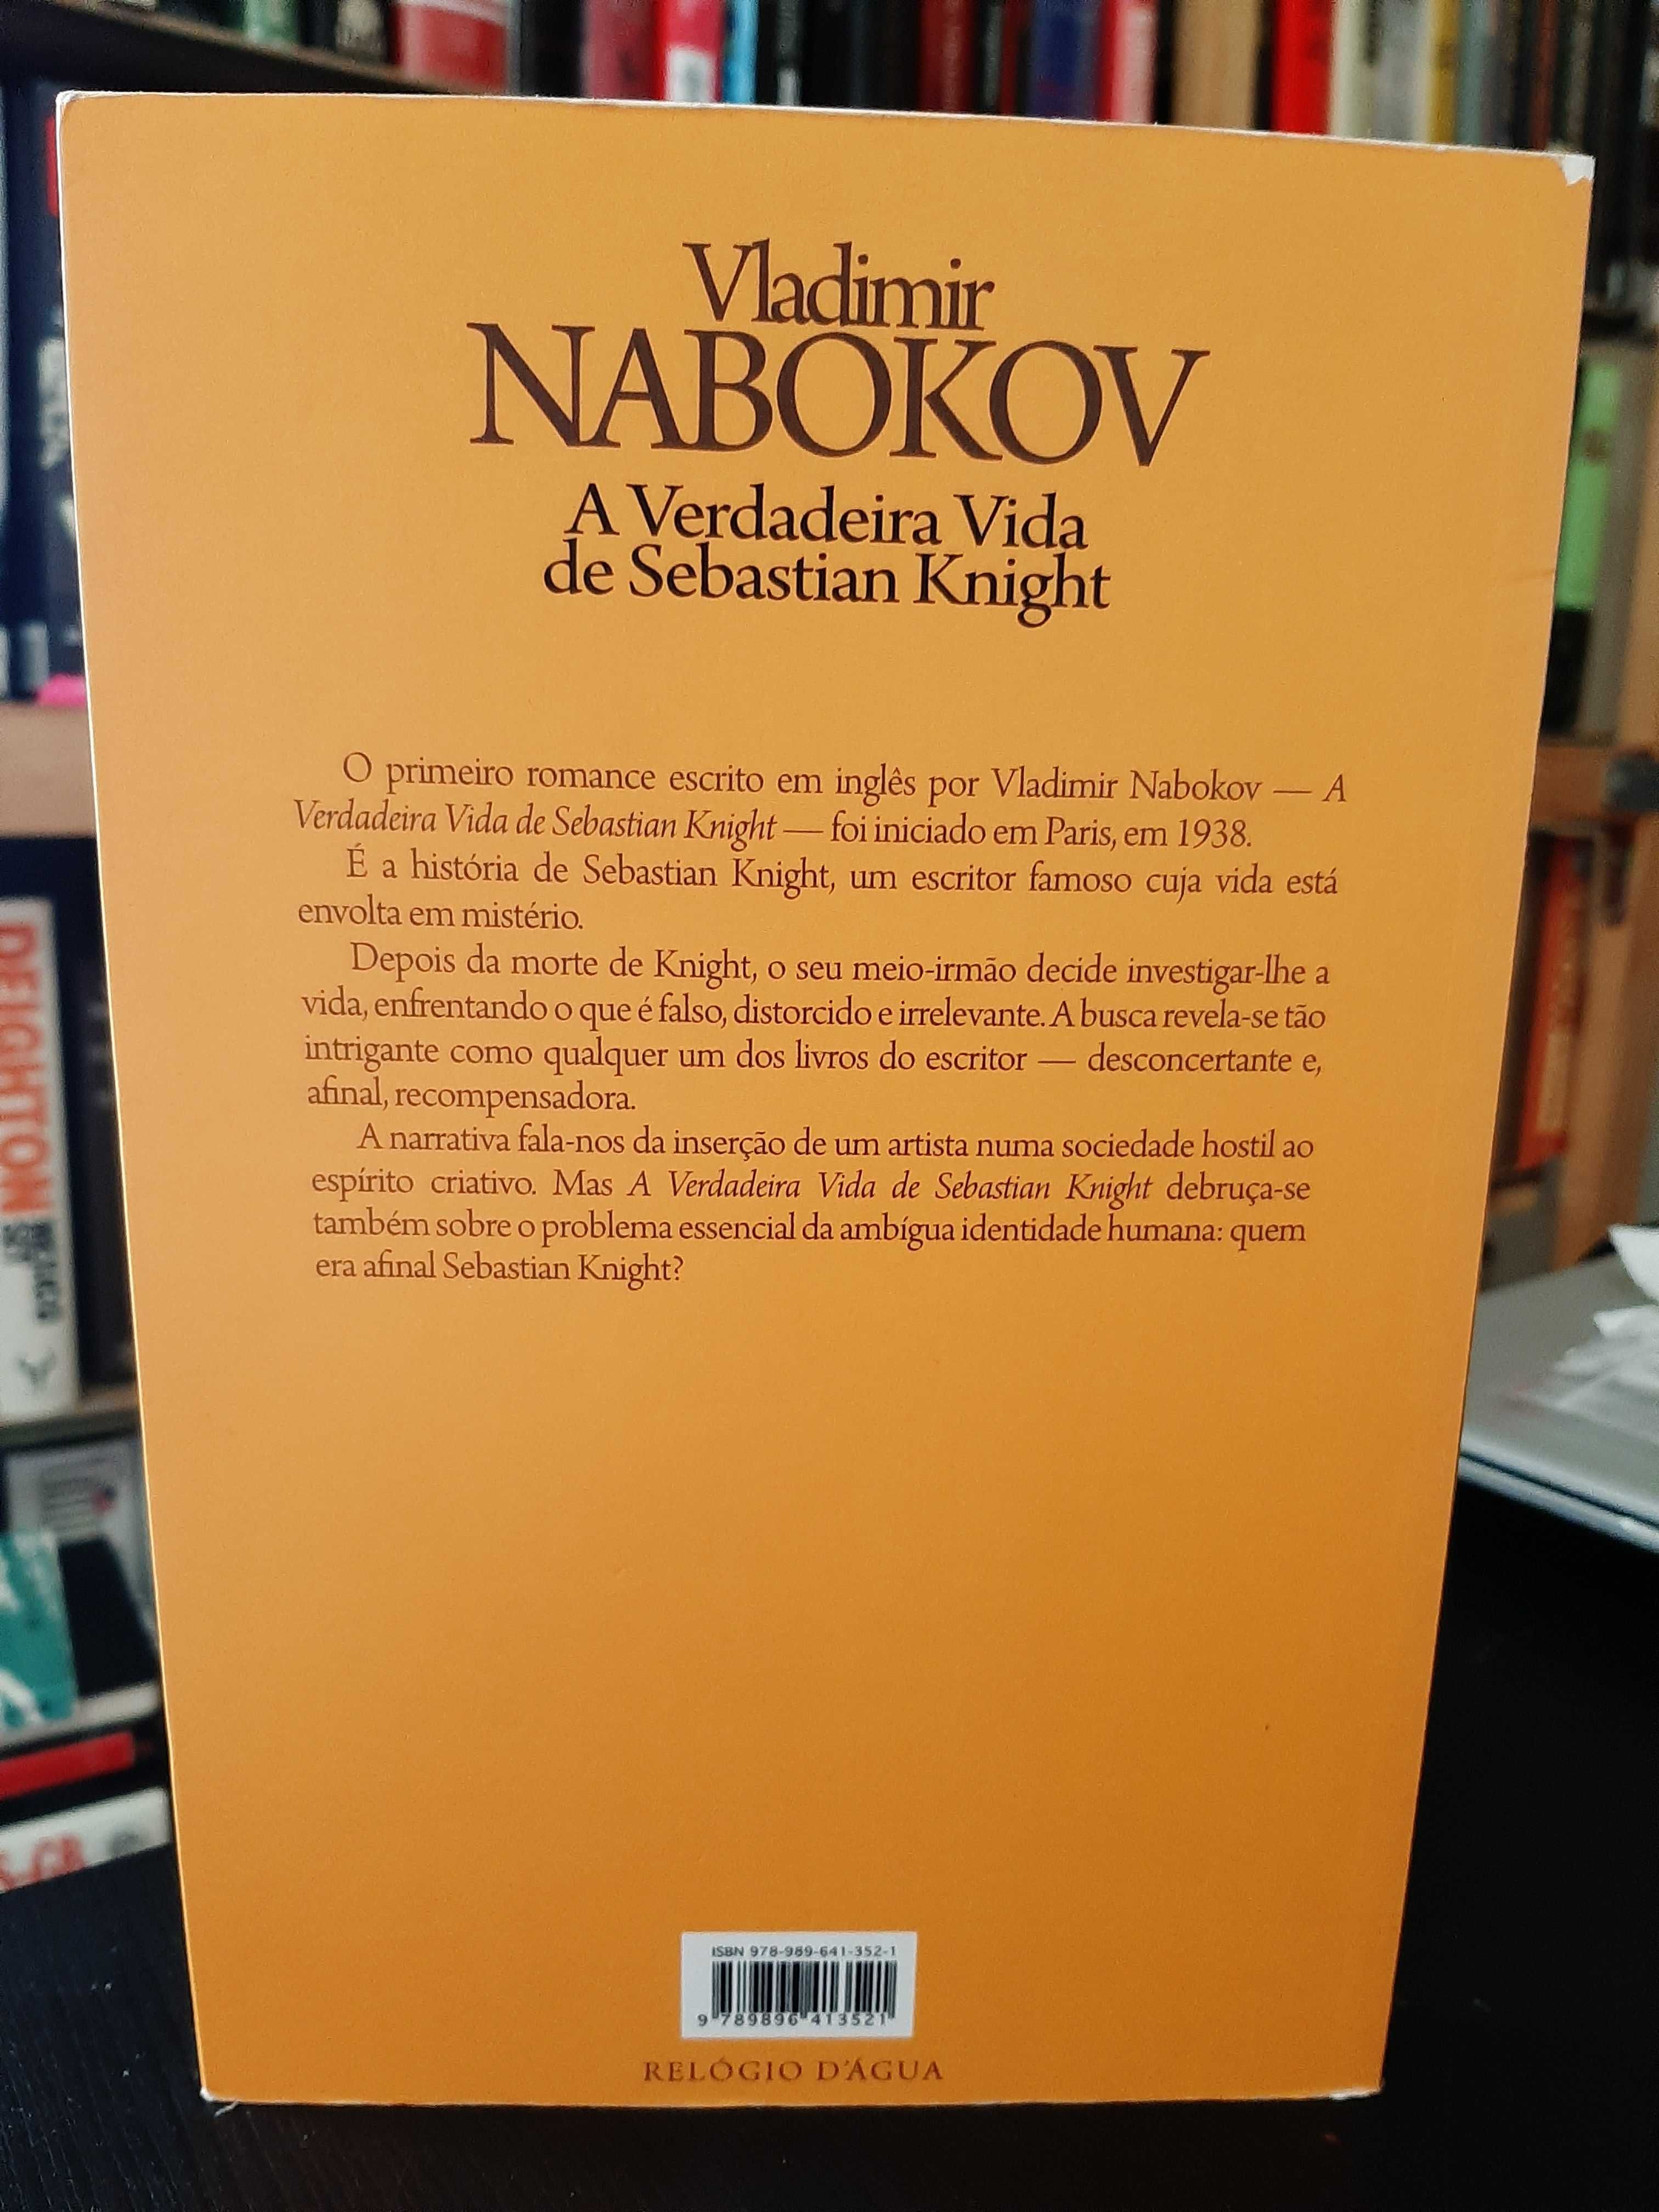 Vladimir Nabokov – A verdadeira vida de Sebastian Knight